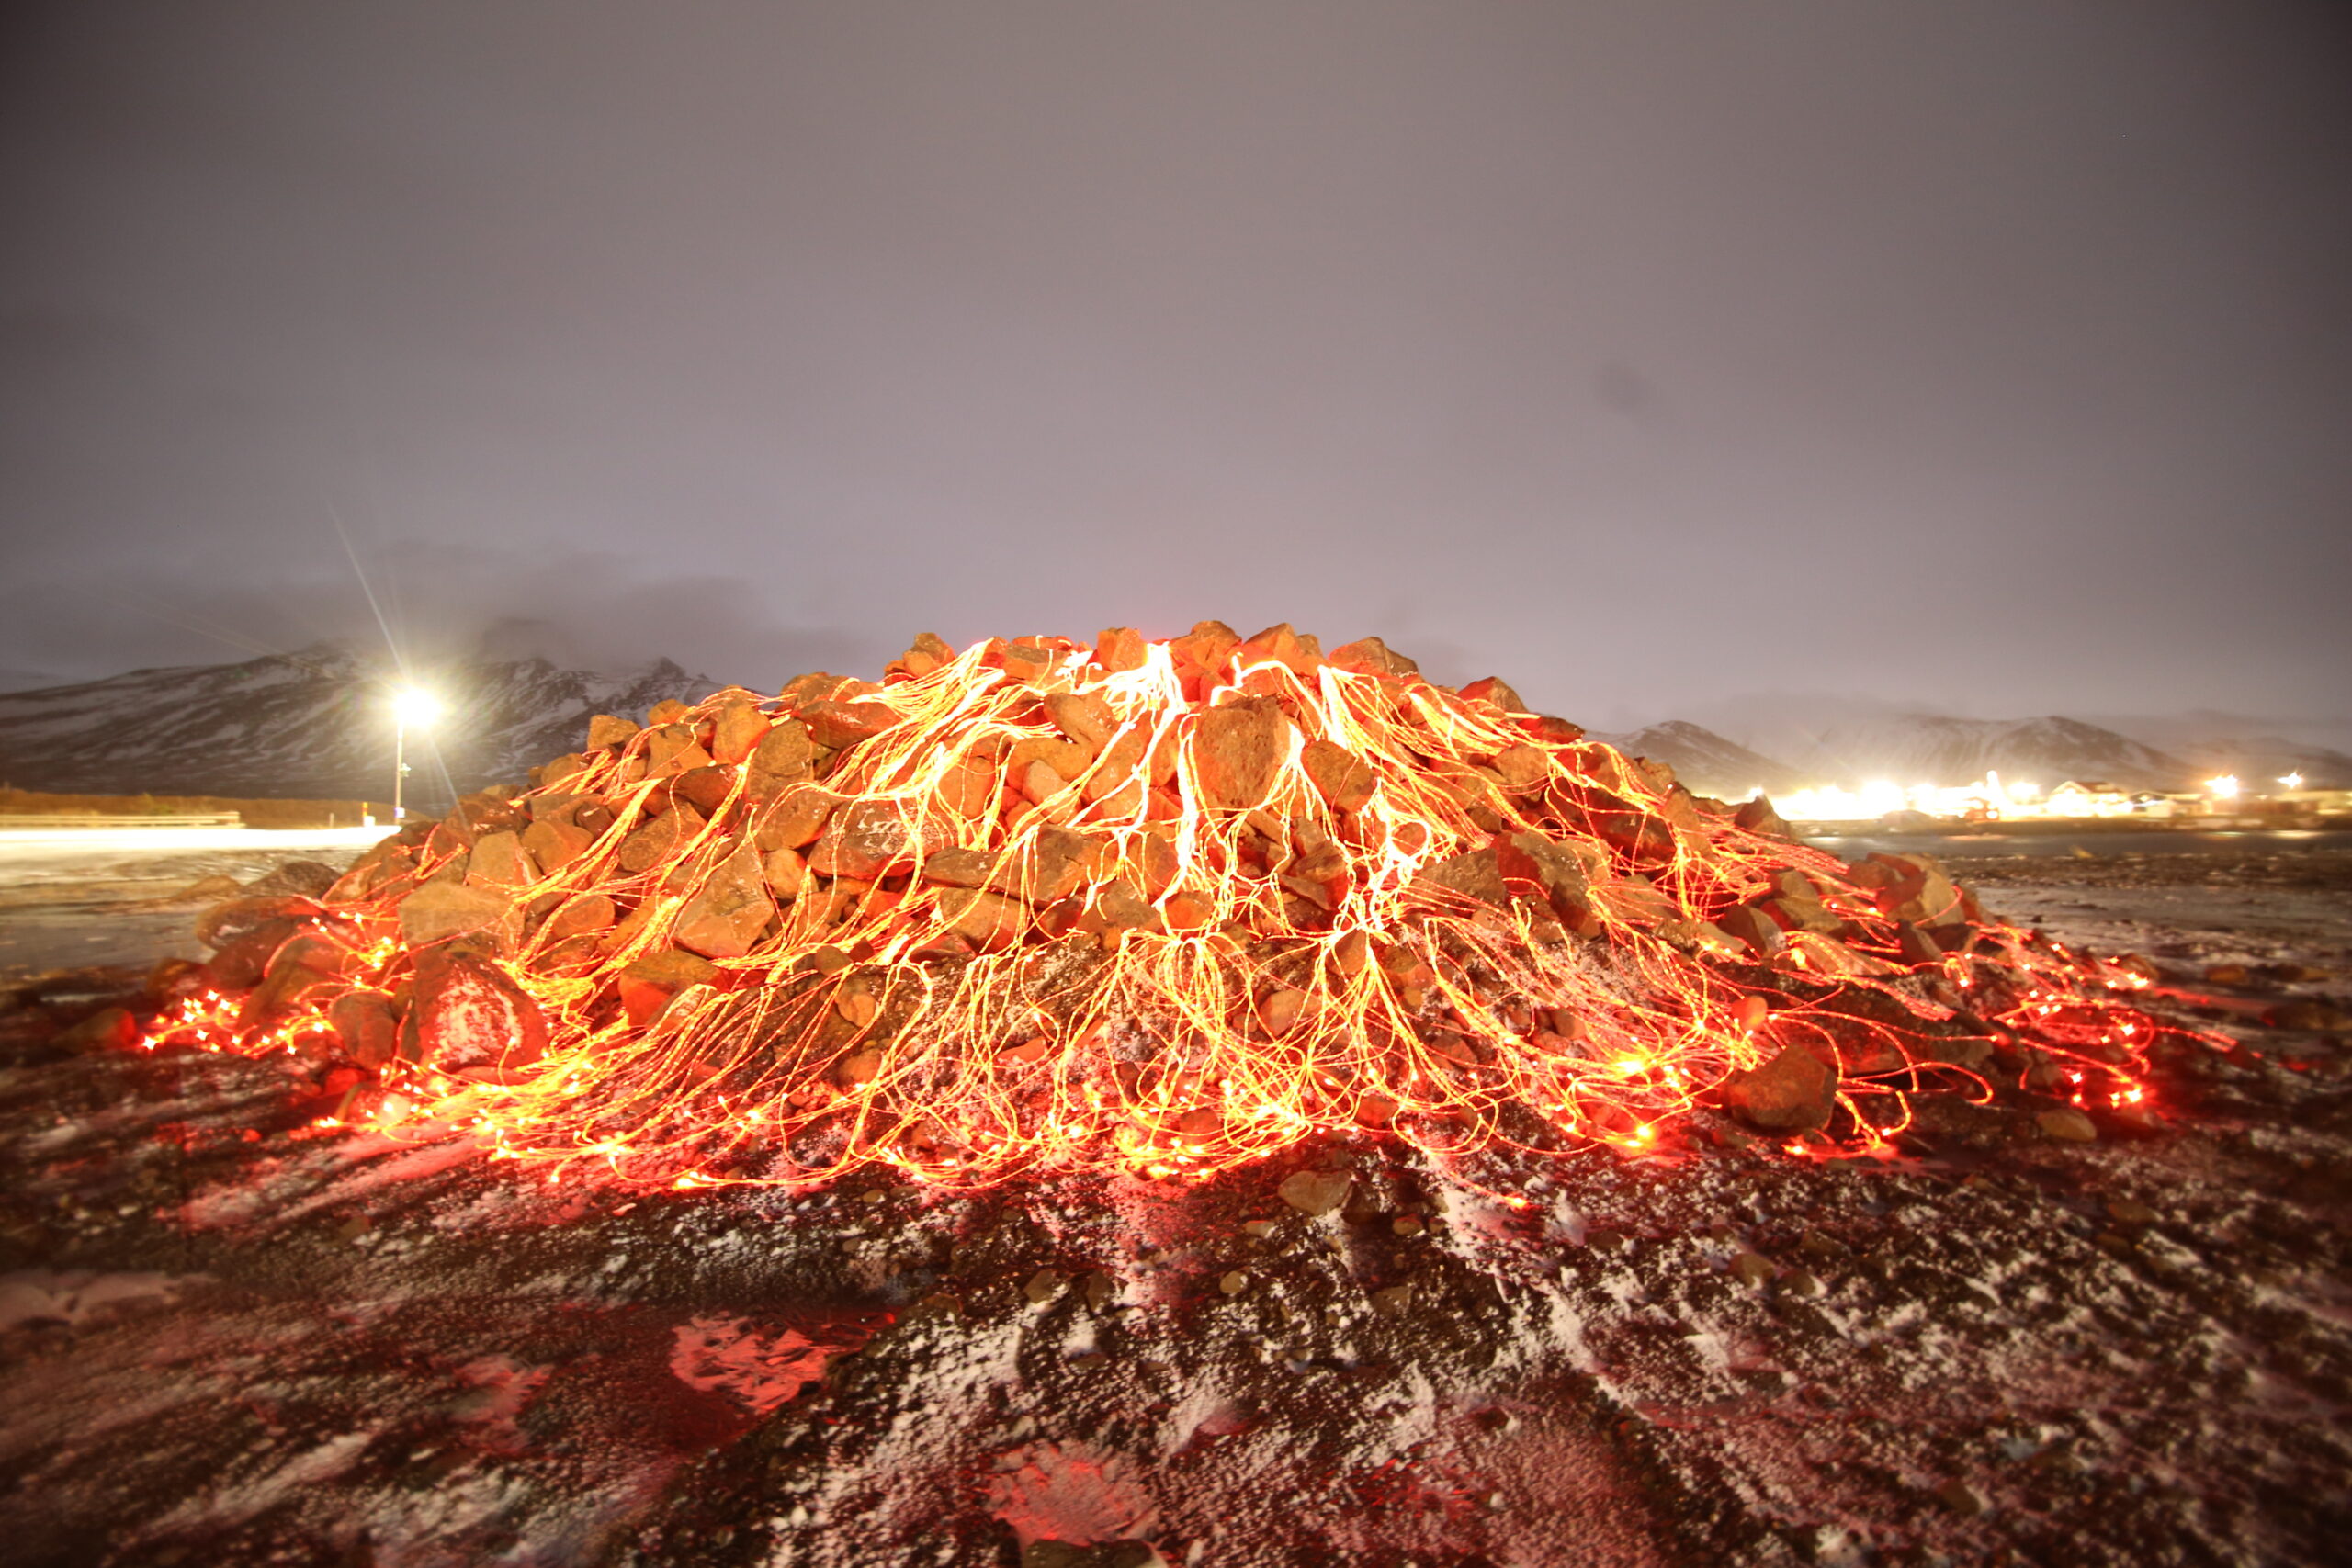 fibre optic lighting representing a volcano